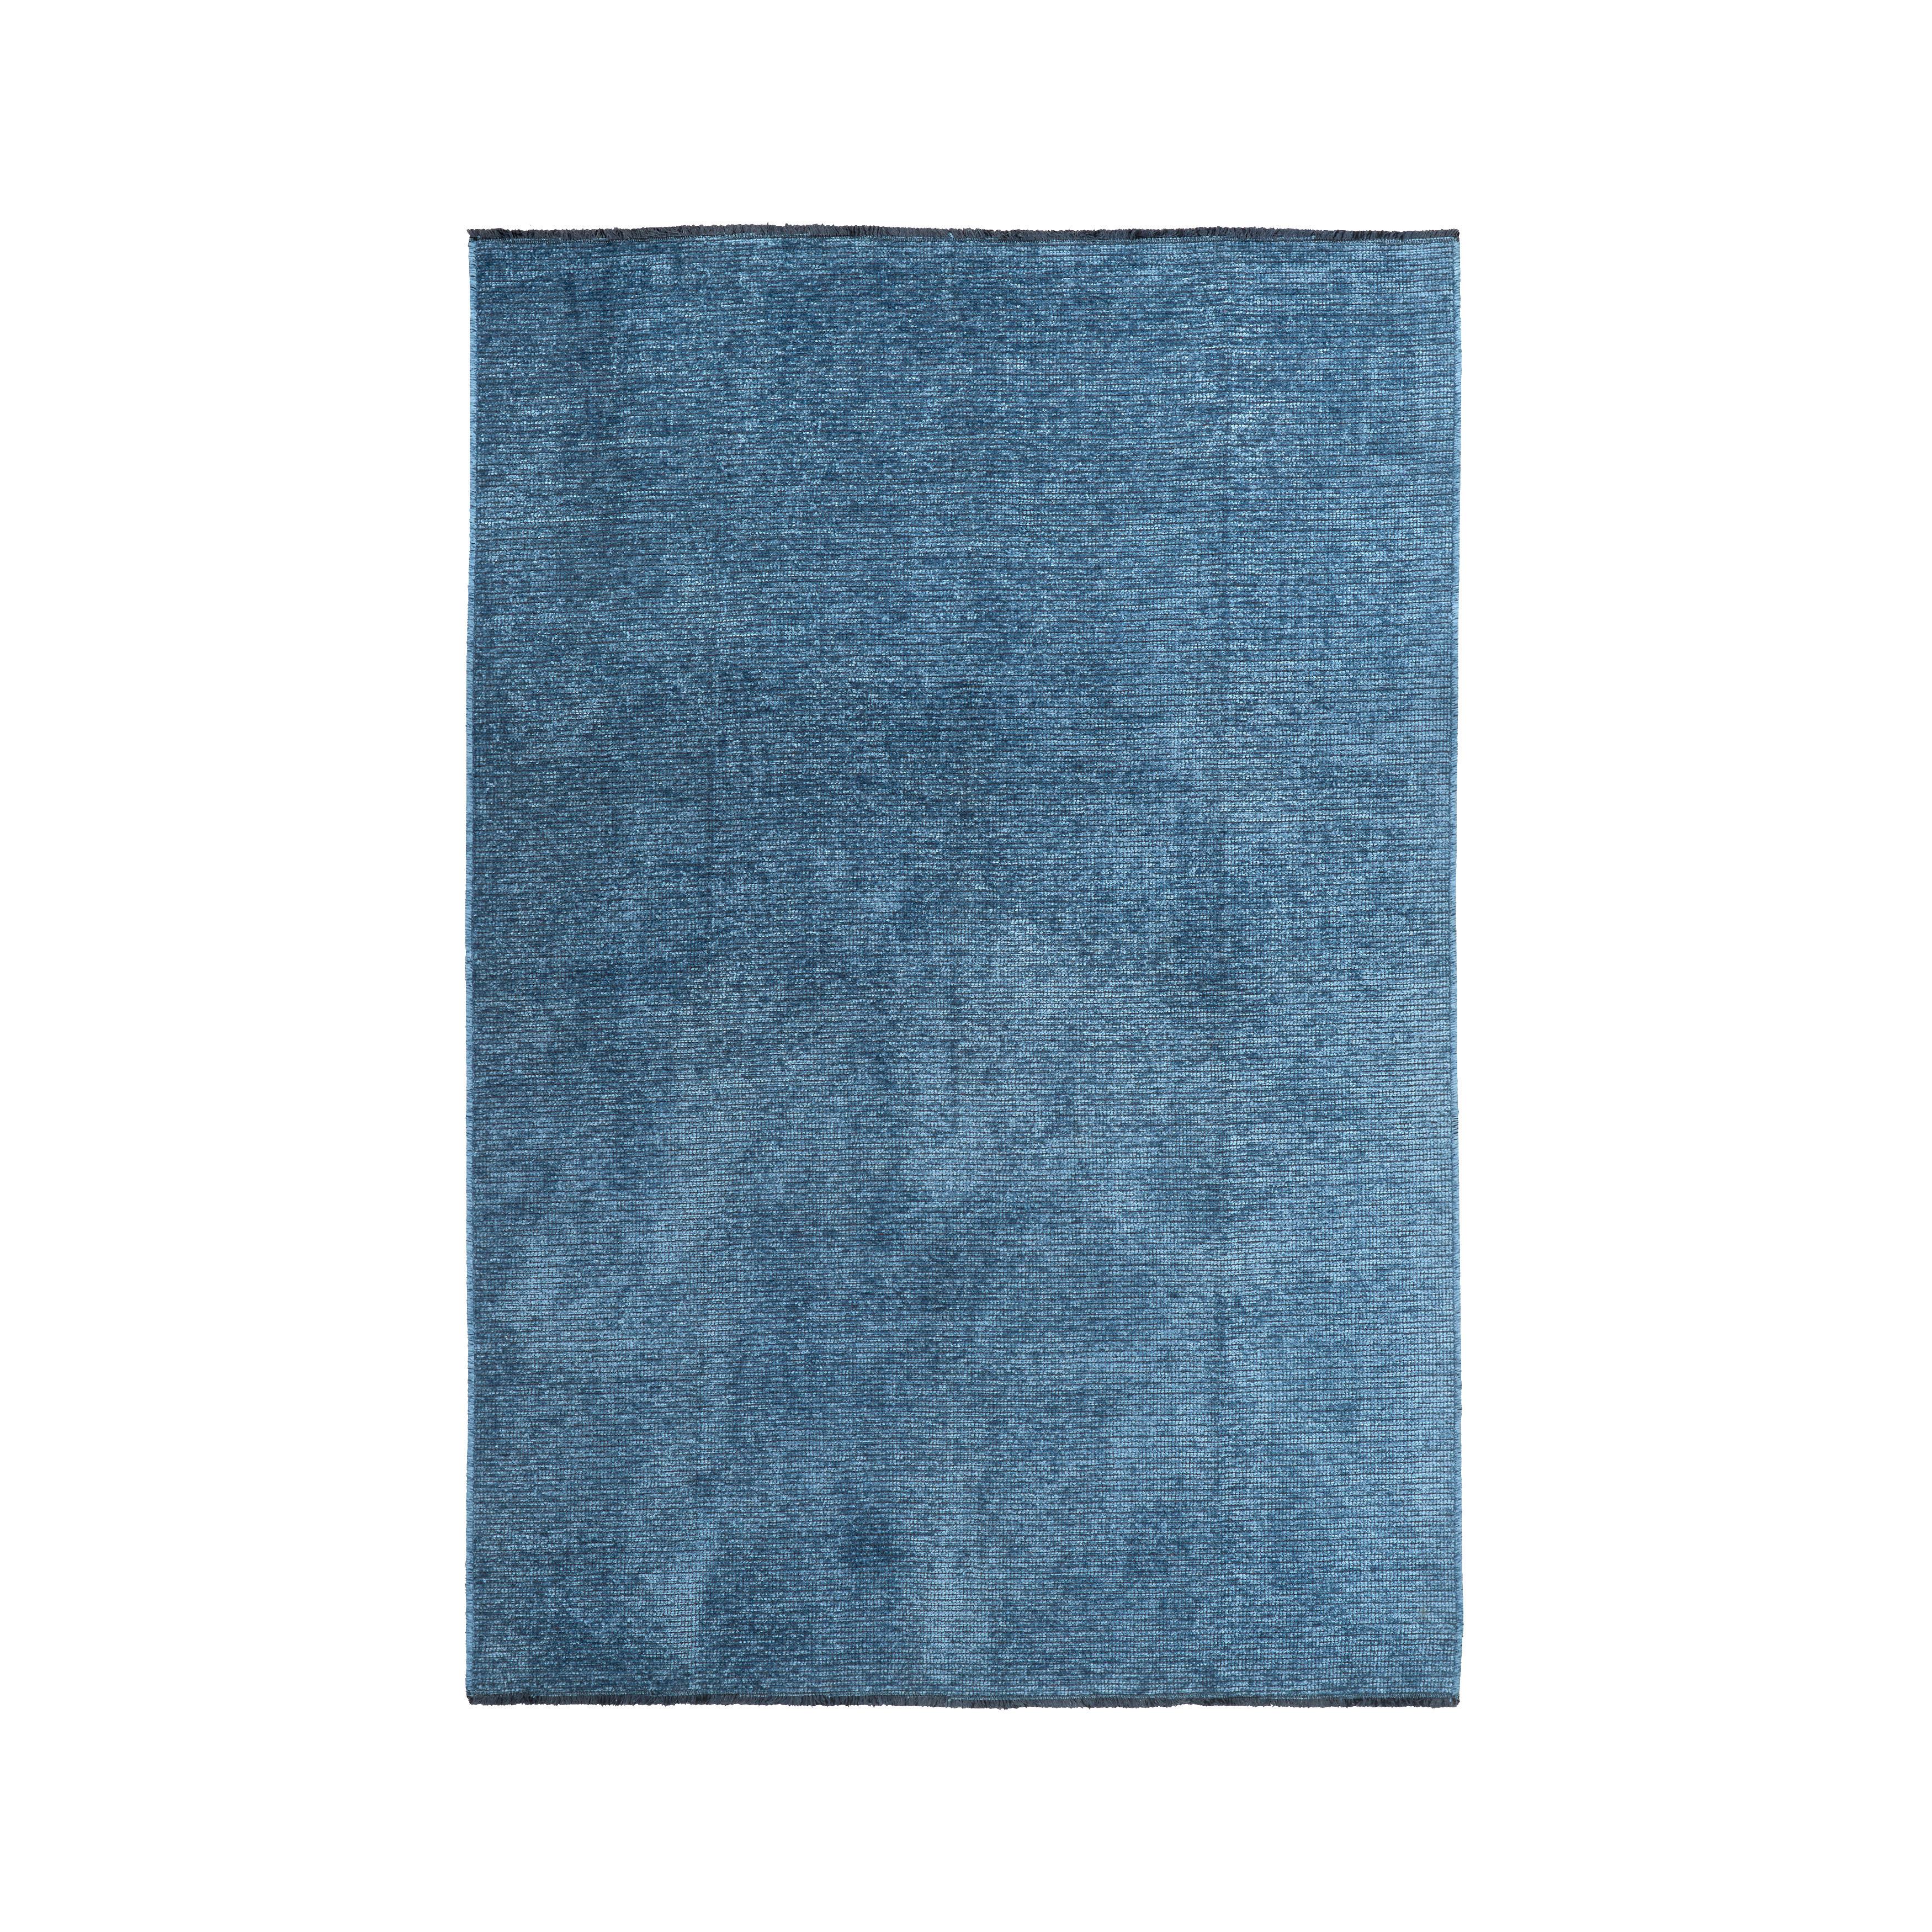 Szőtt Szőnyeg Silke 80/150 - Kék, romantikus/Landhaus, Textil (80/150cm) - Modern Living